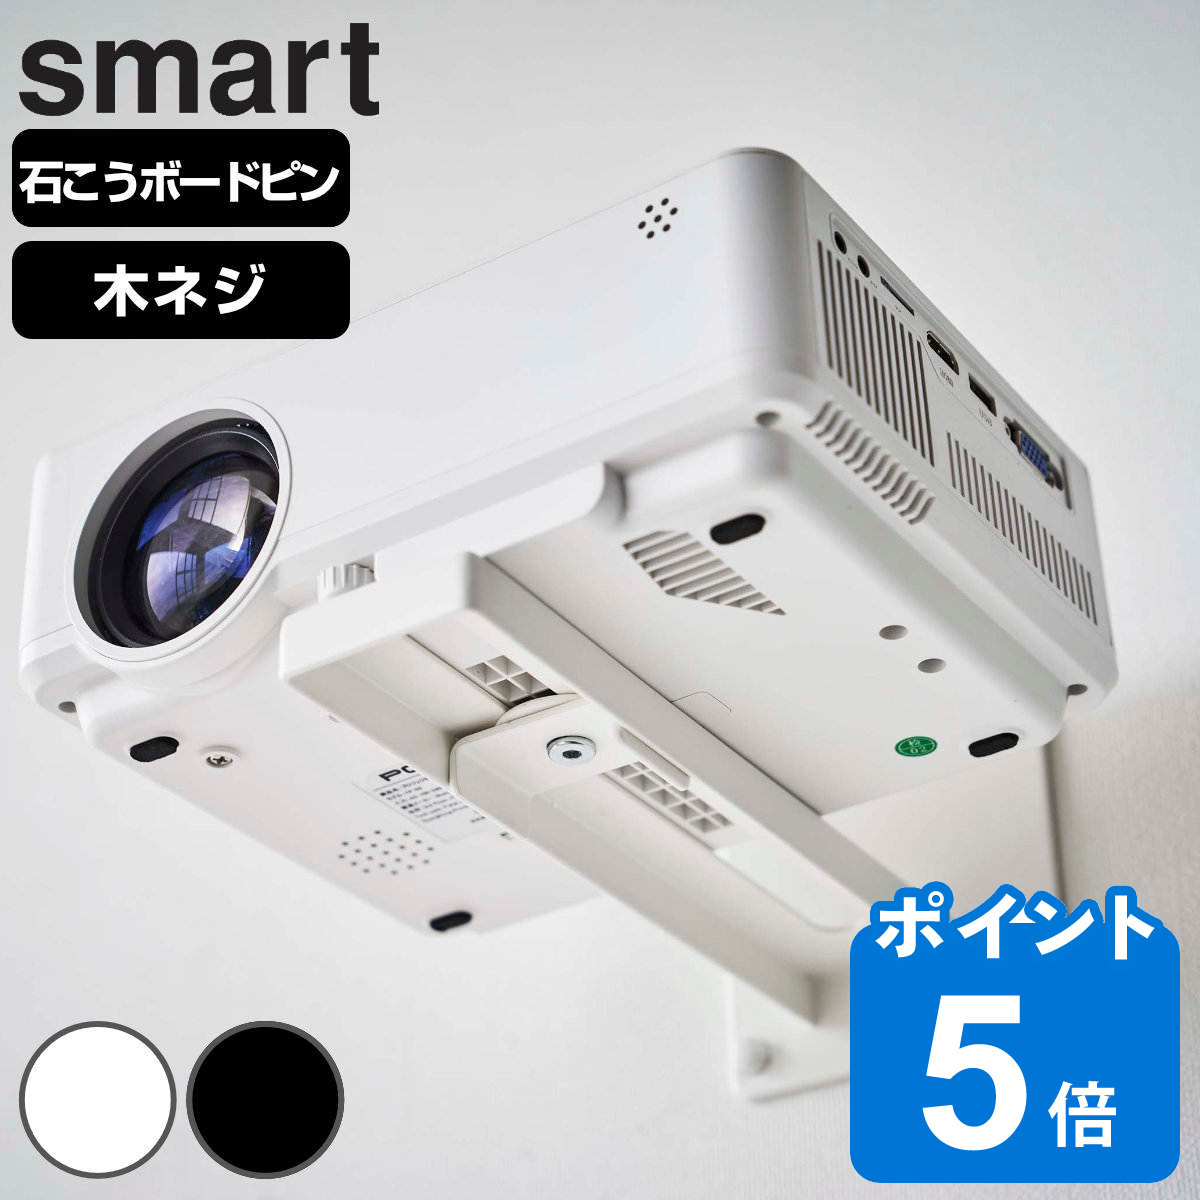 山崎実業 smart ウォールプロジェクターラック スマート